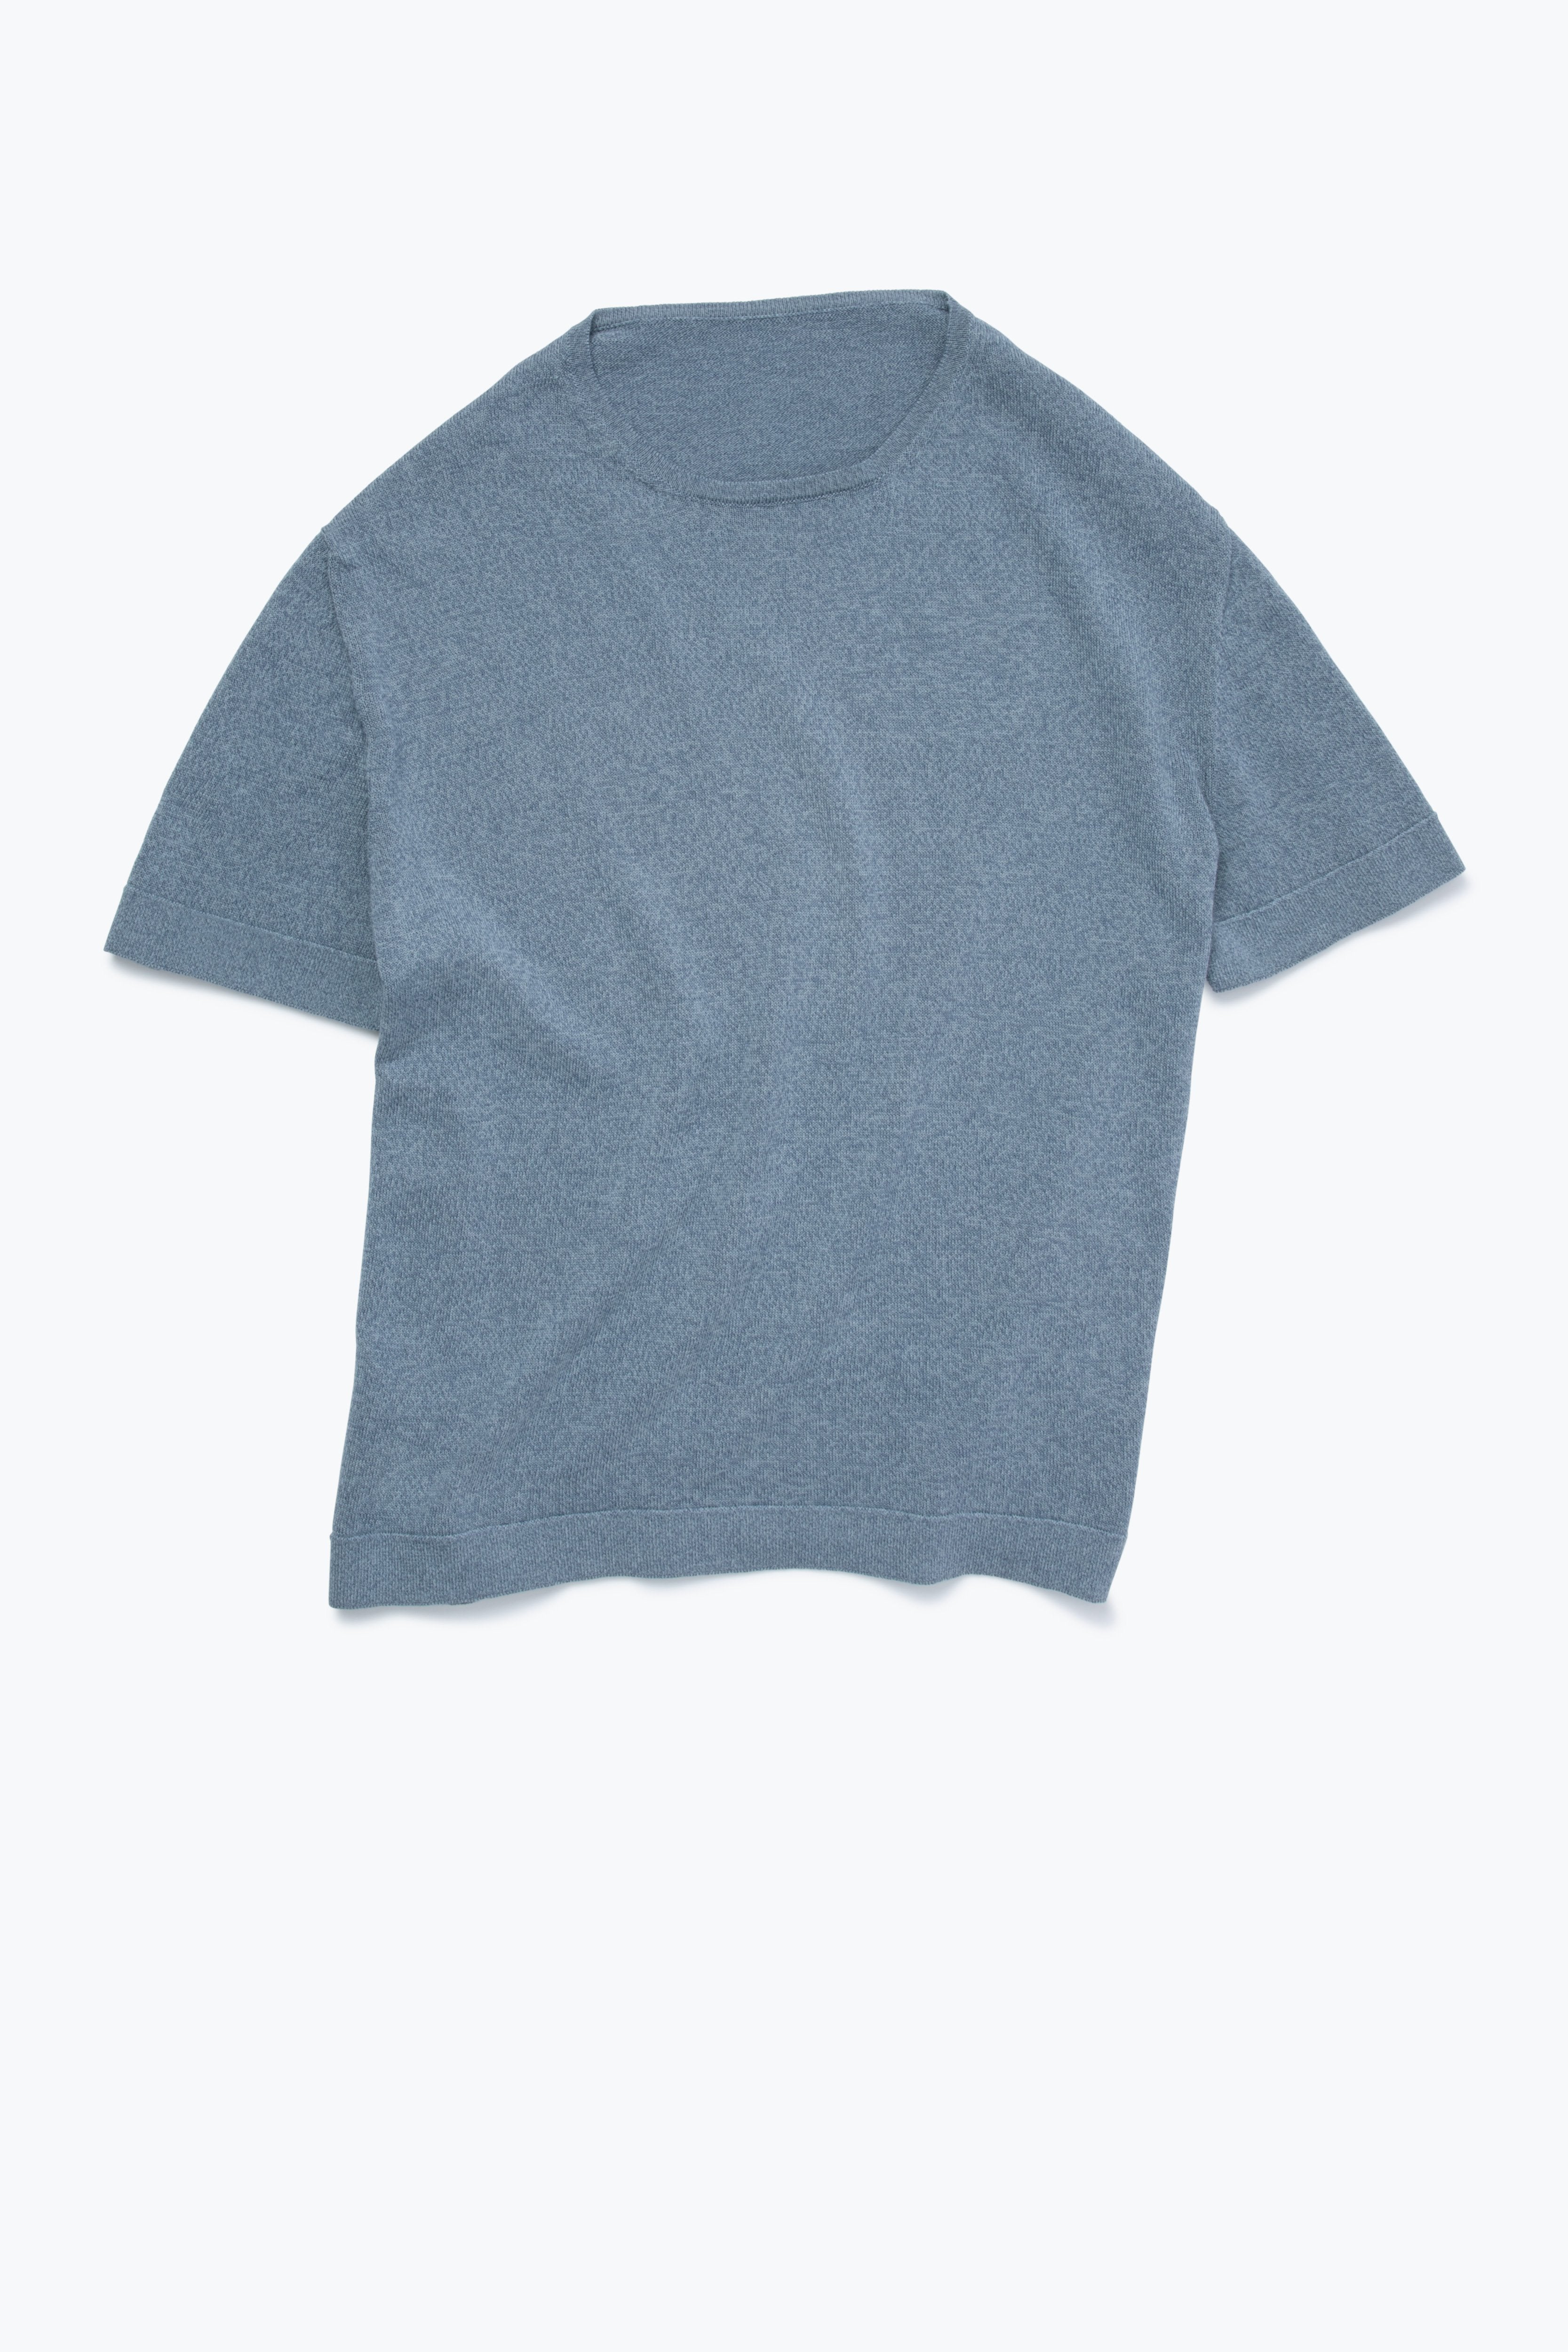 MTO - Short Sleeve Knit T-Shirt (Washed Indigo Cotton Moulin )